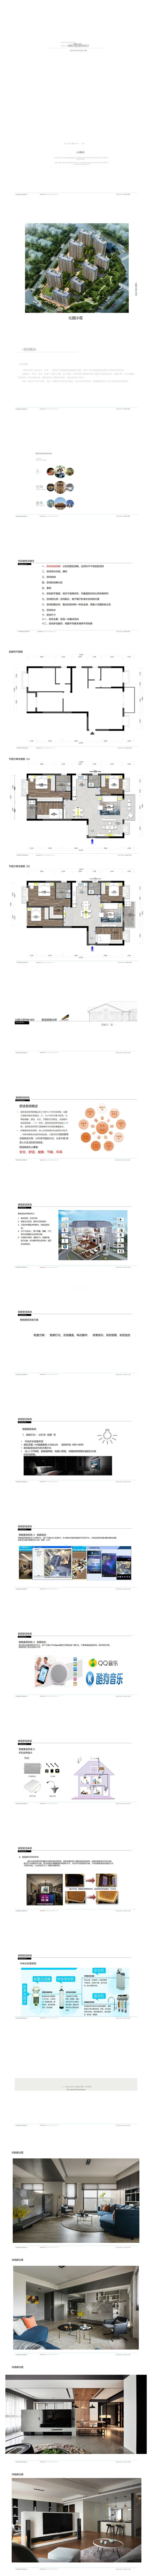 南宁沁园126㎡户型现代简约装修风格设计方案解析1